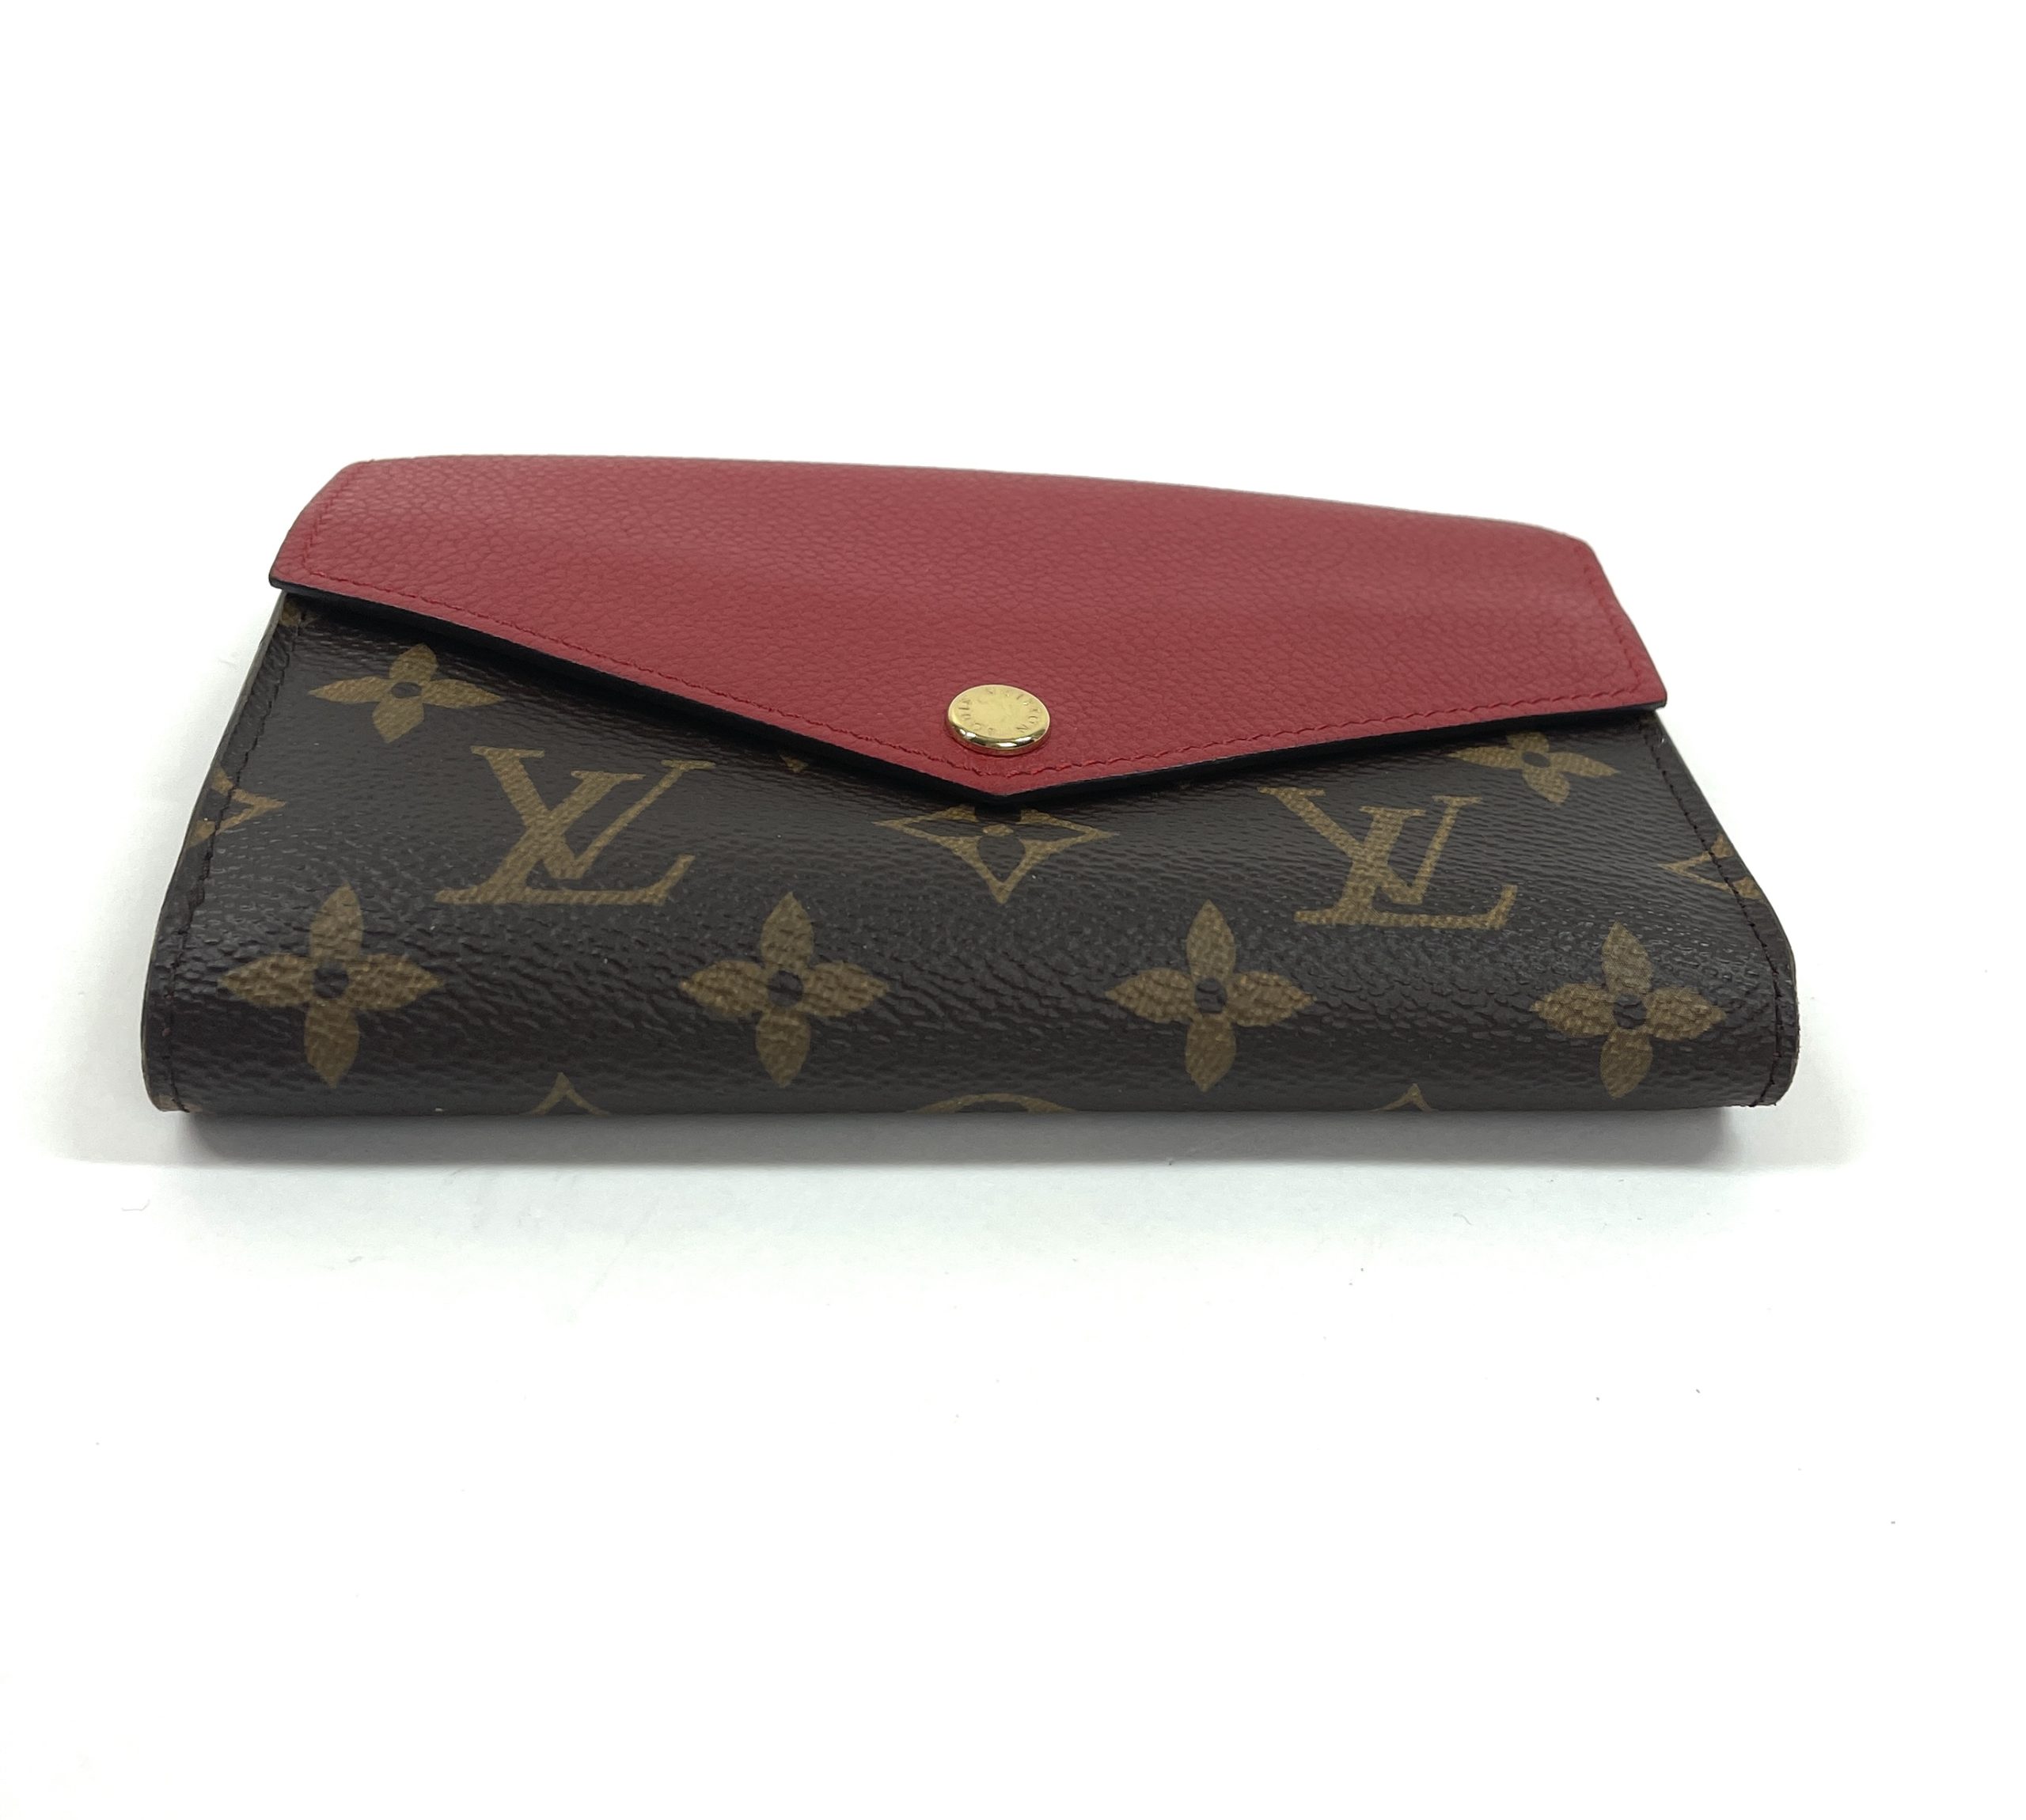 Auth LOUIS VUITTON Monogram Pallas Compact Wallet Cerise (Cherry)  Leather/Canvas